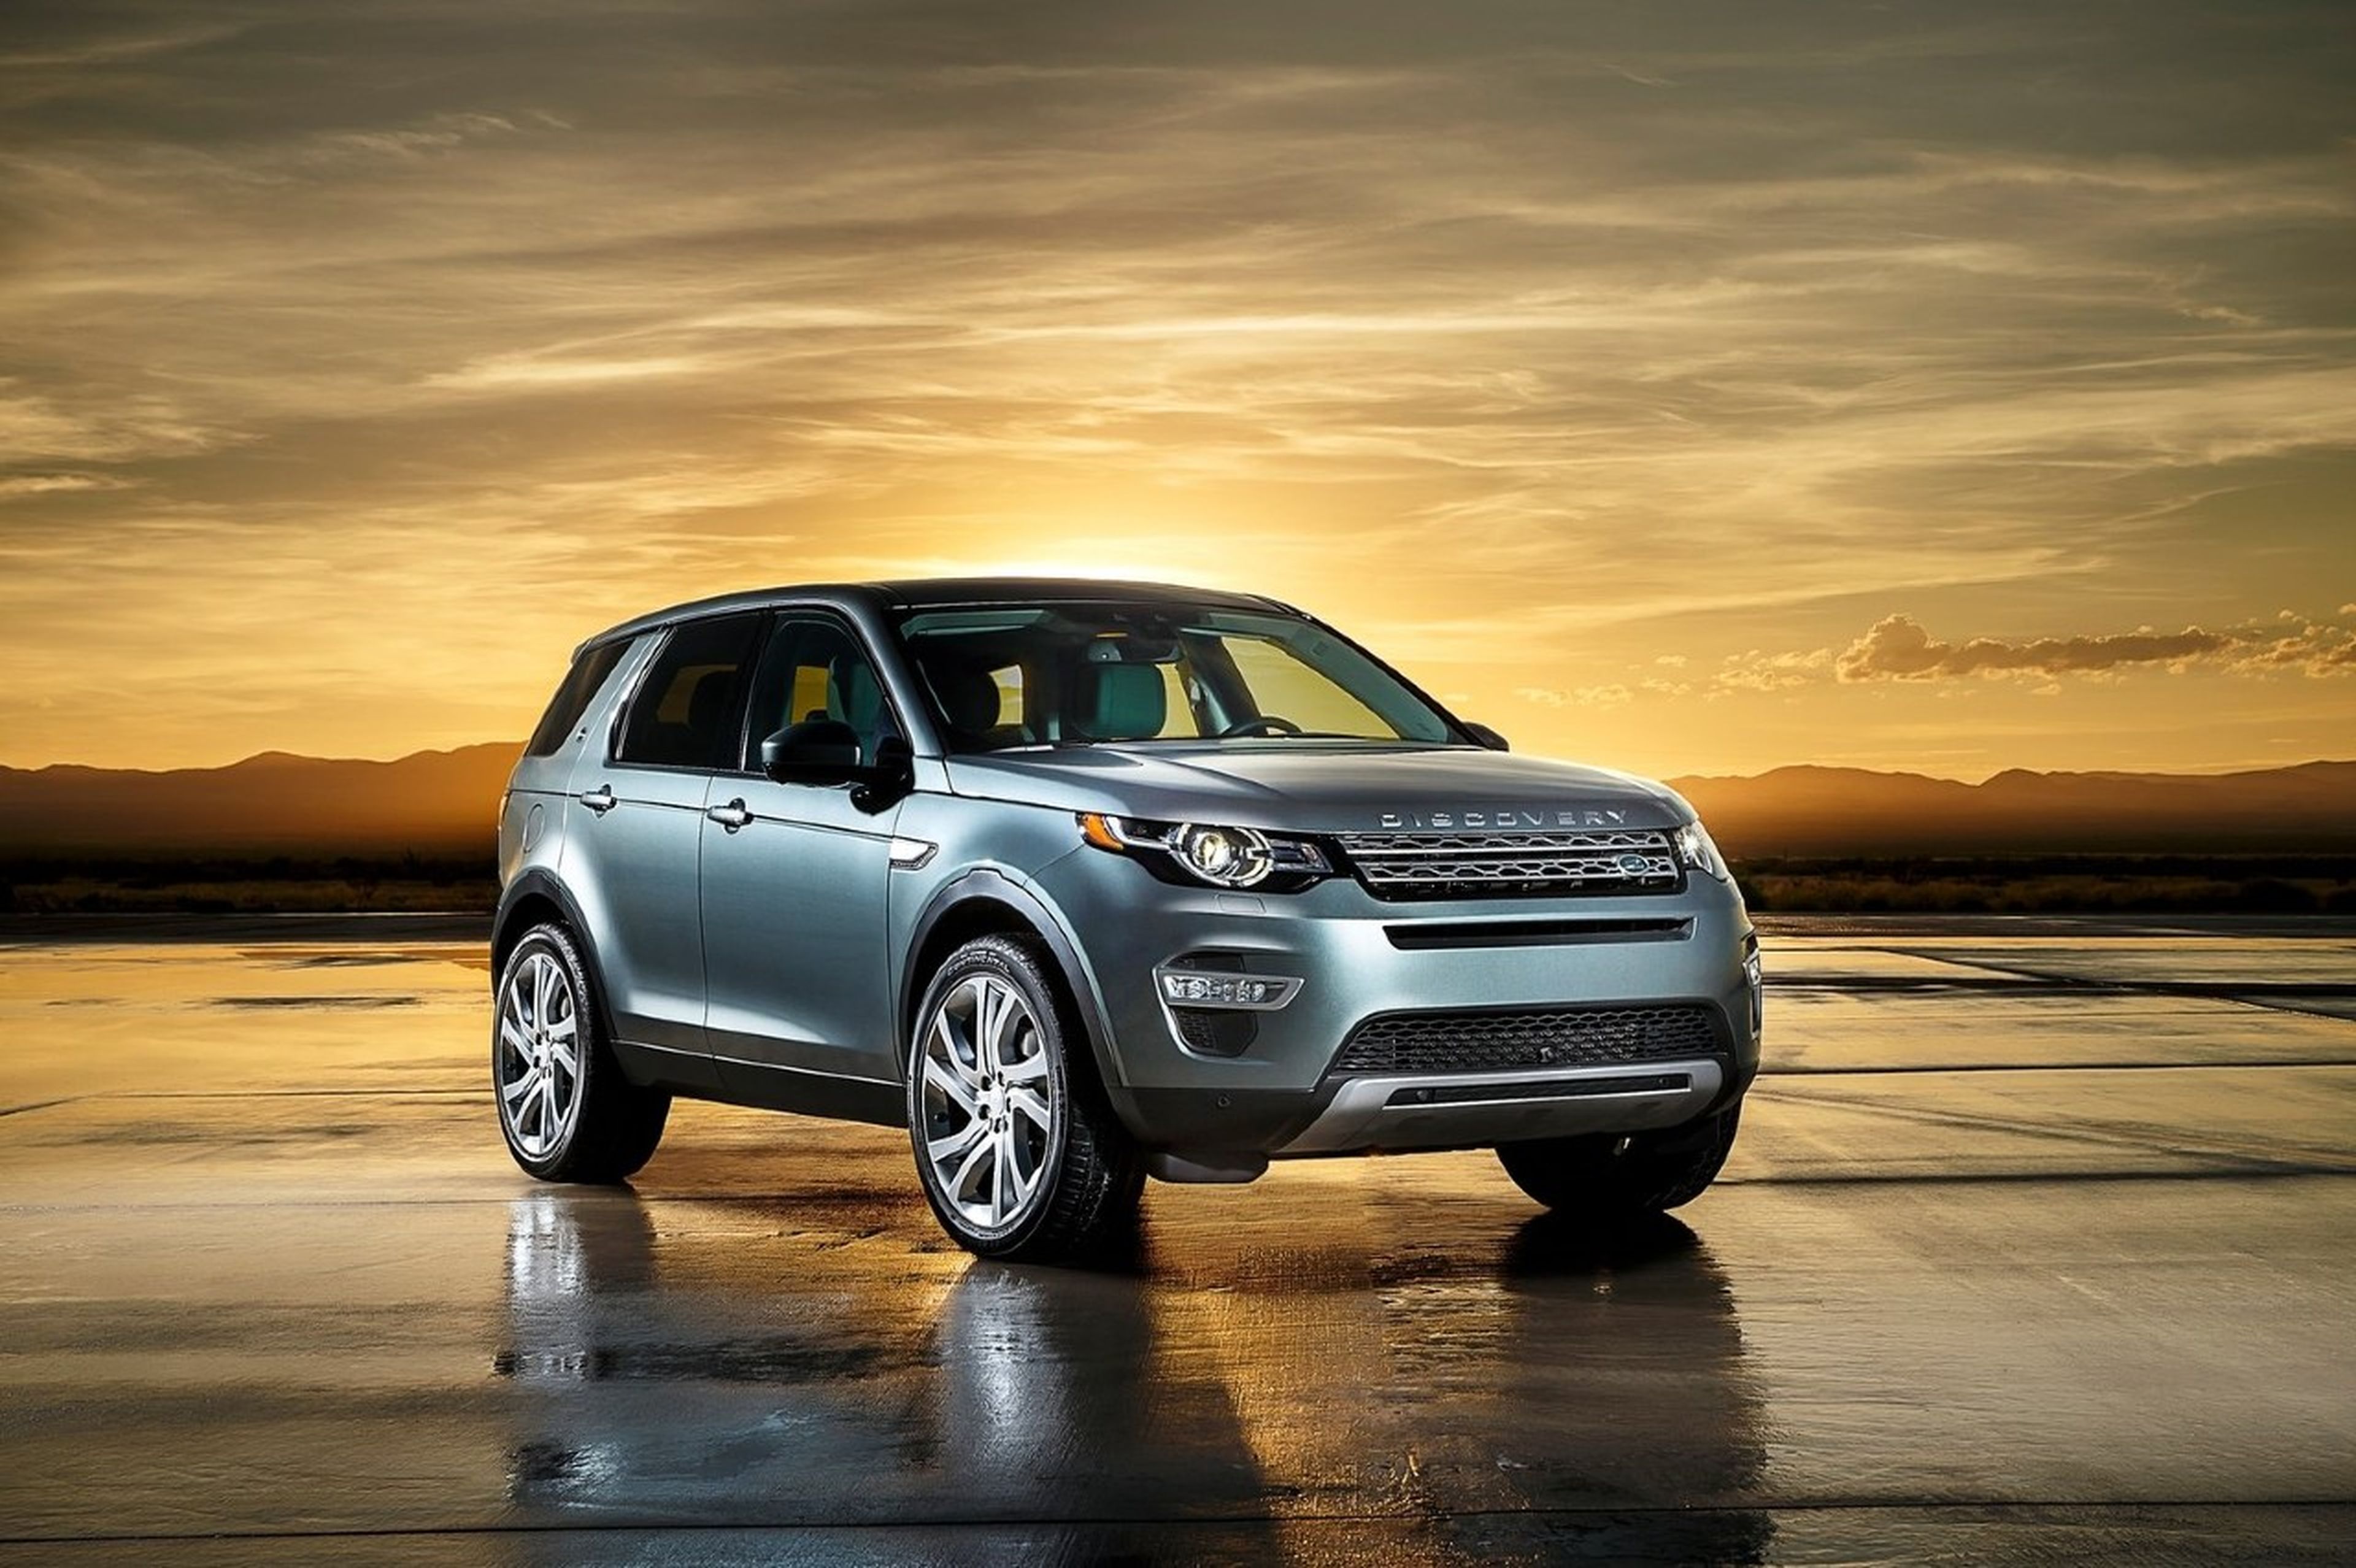 Land Rover Explore: El móvil todoterreno basado en el Discovery ya está aquí